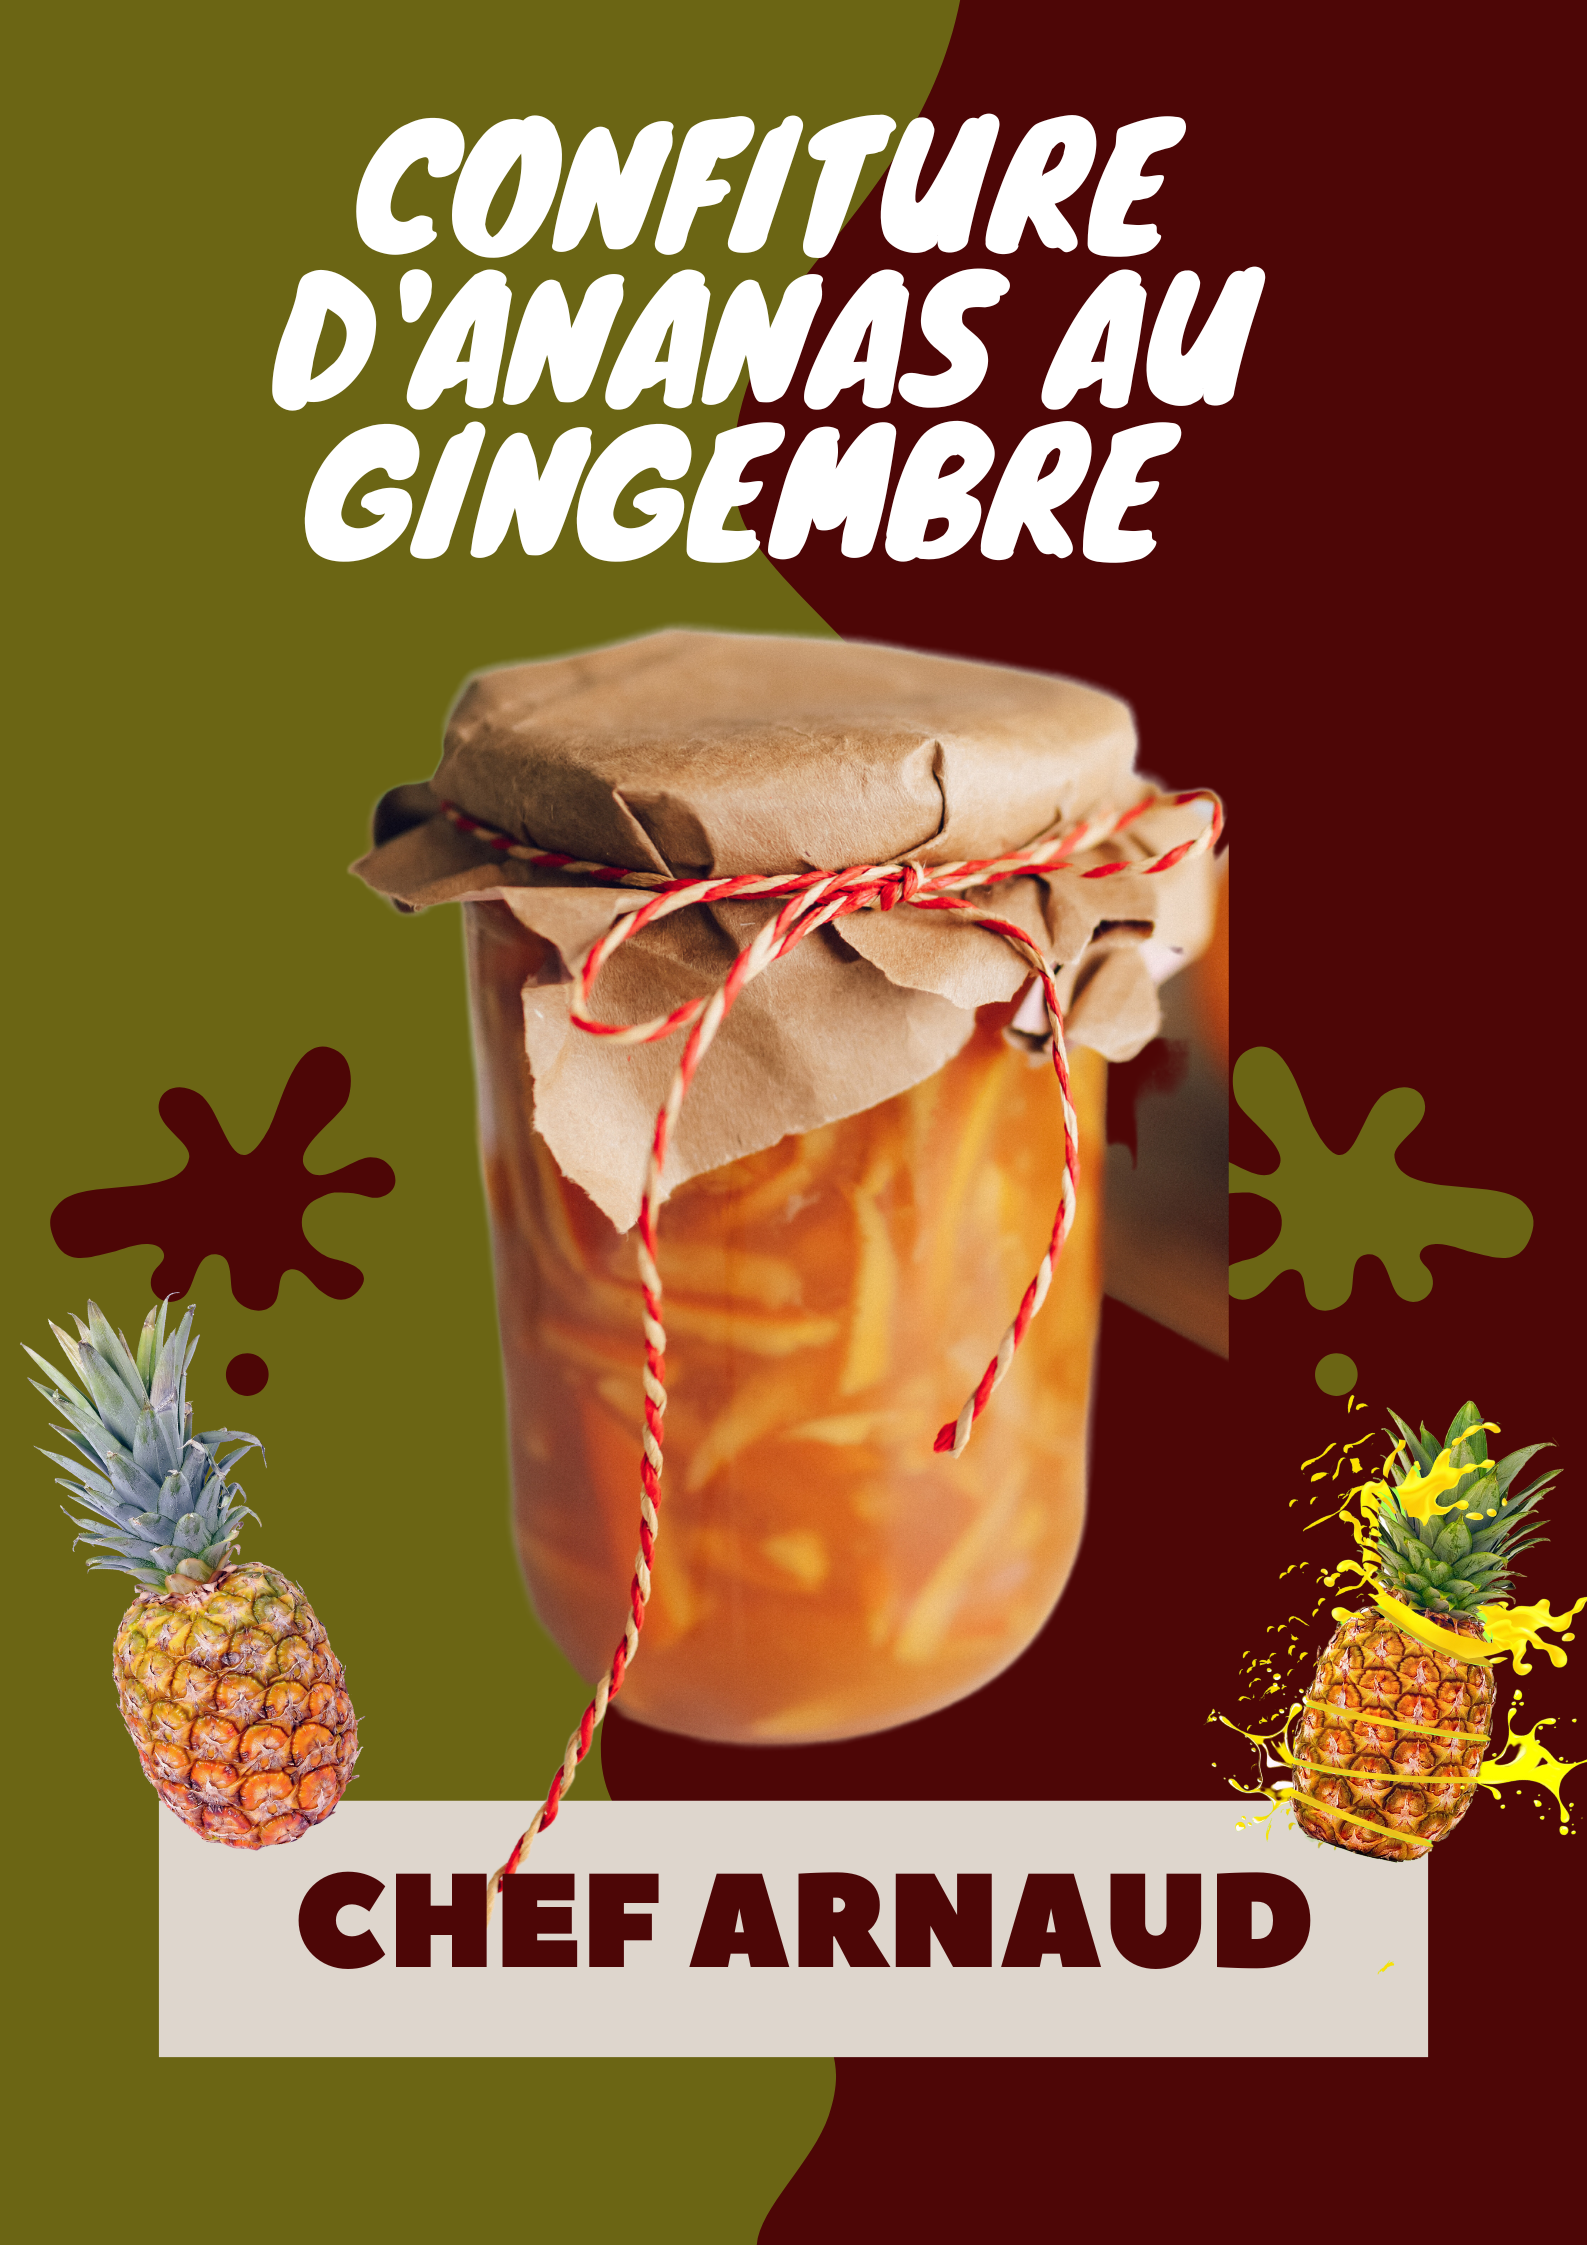 Confiture d’Ananas au gingembre de Chef Arnaud